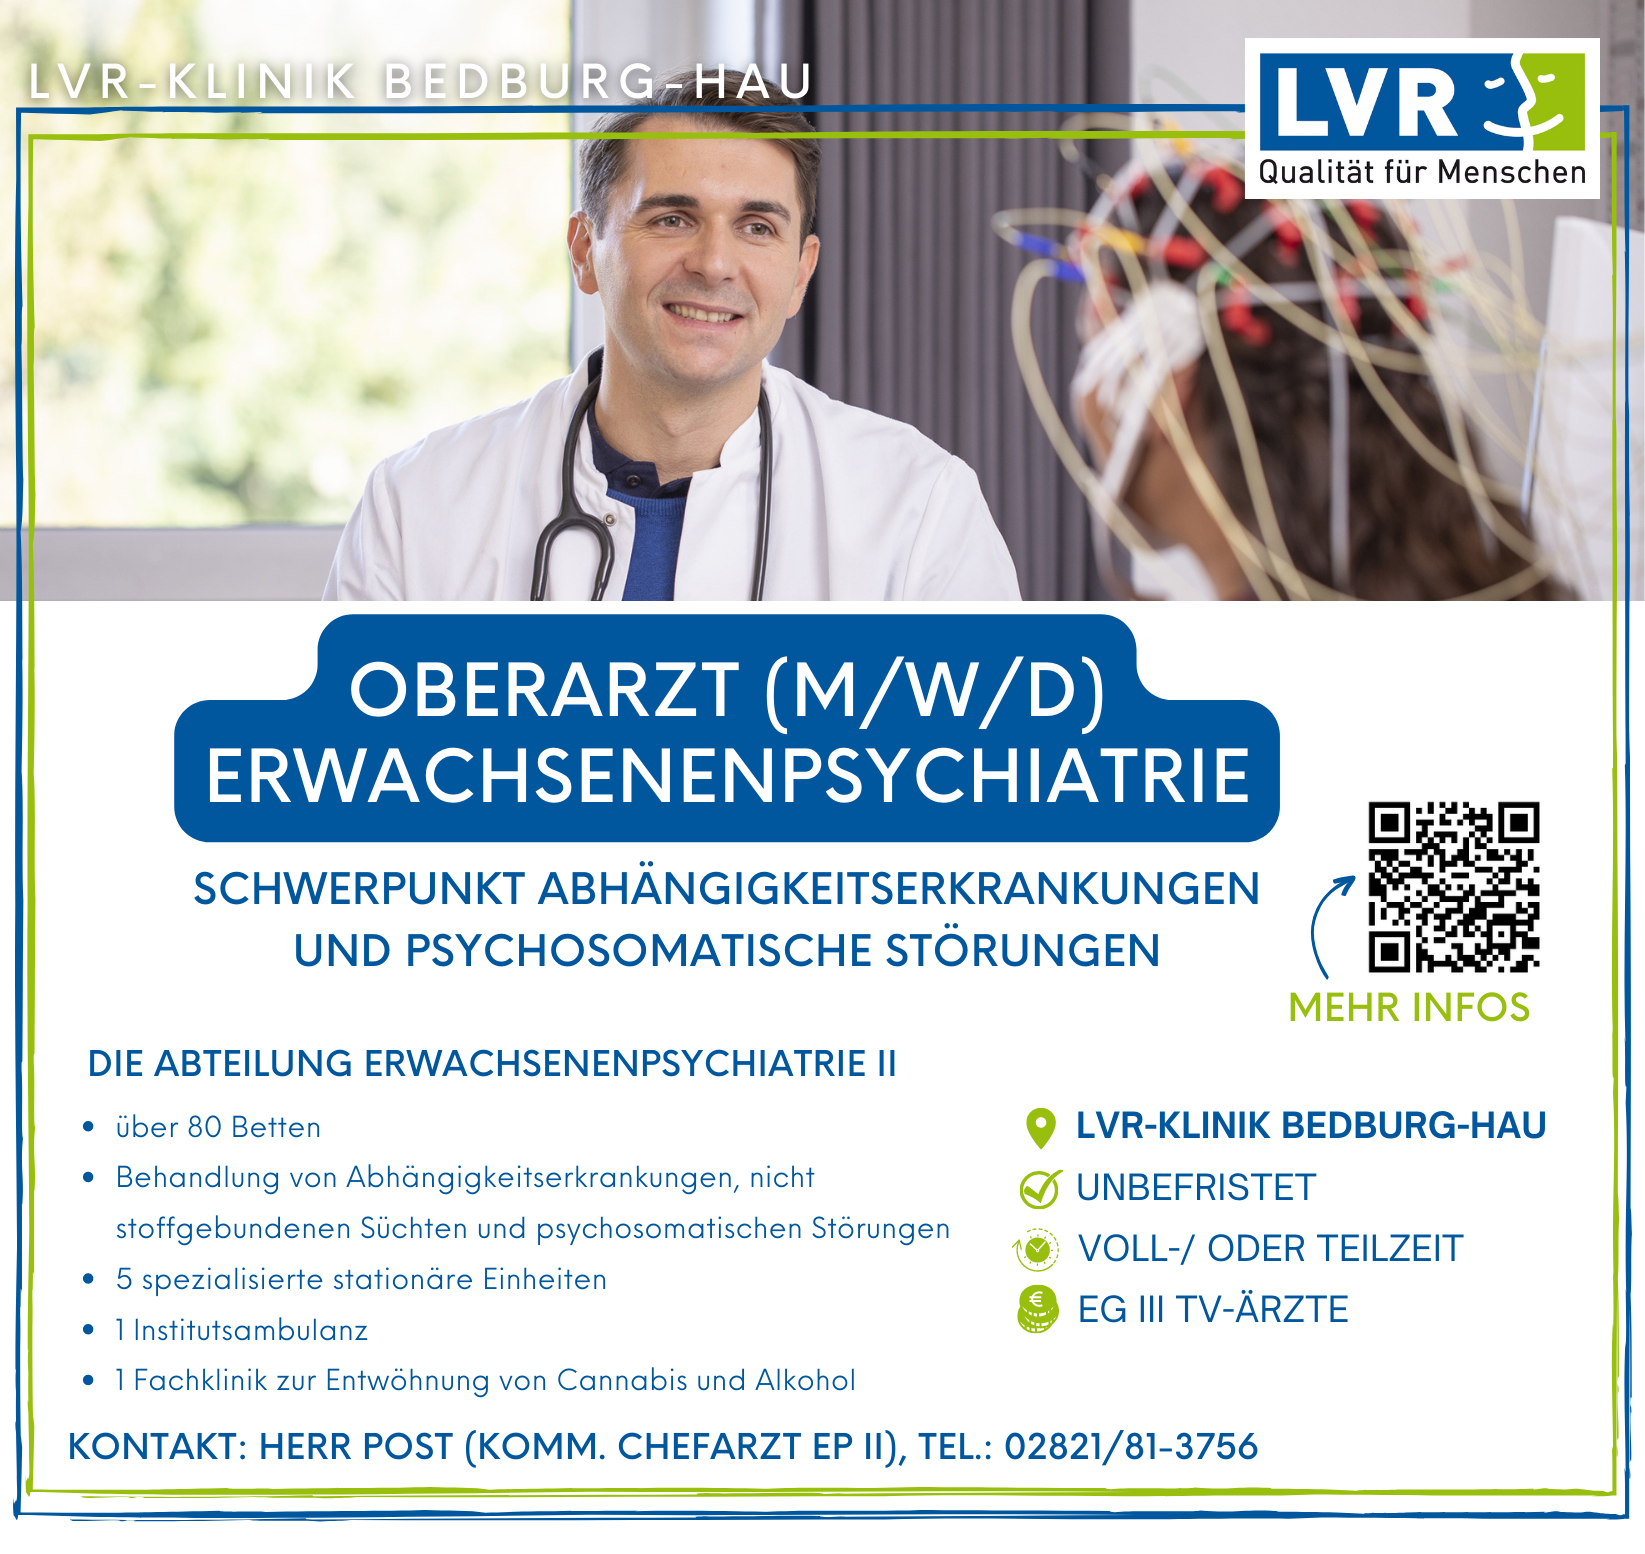 LVR-Klinik Bedburg-Hau Facharzt / Fachärztin Innnere / Allgemeinmedizin (m/w/d) Bedburg-Hau stellencompass.de